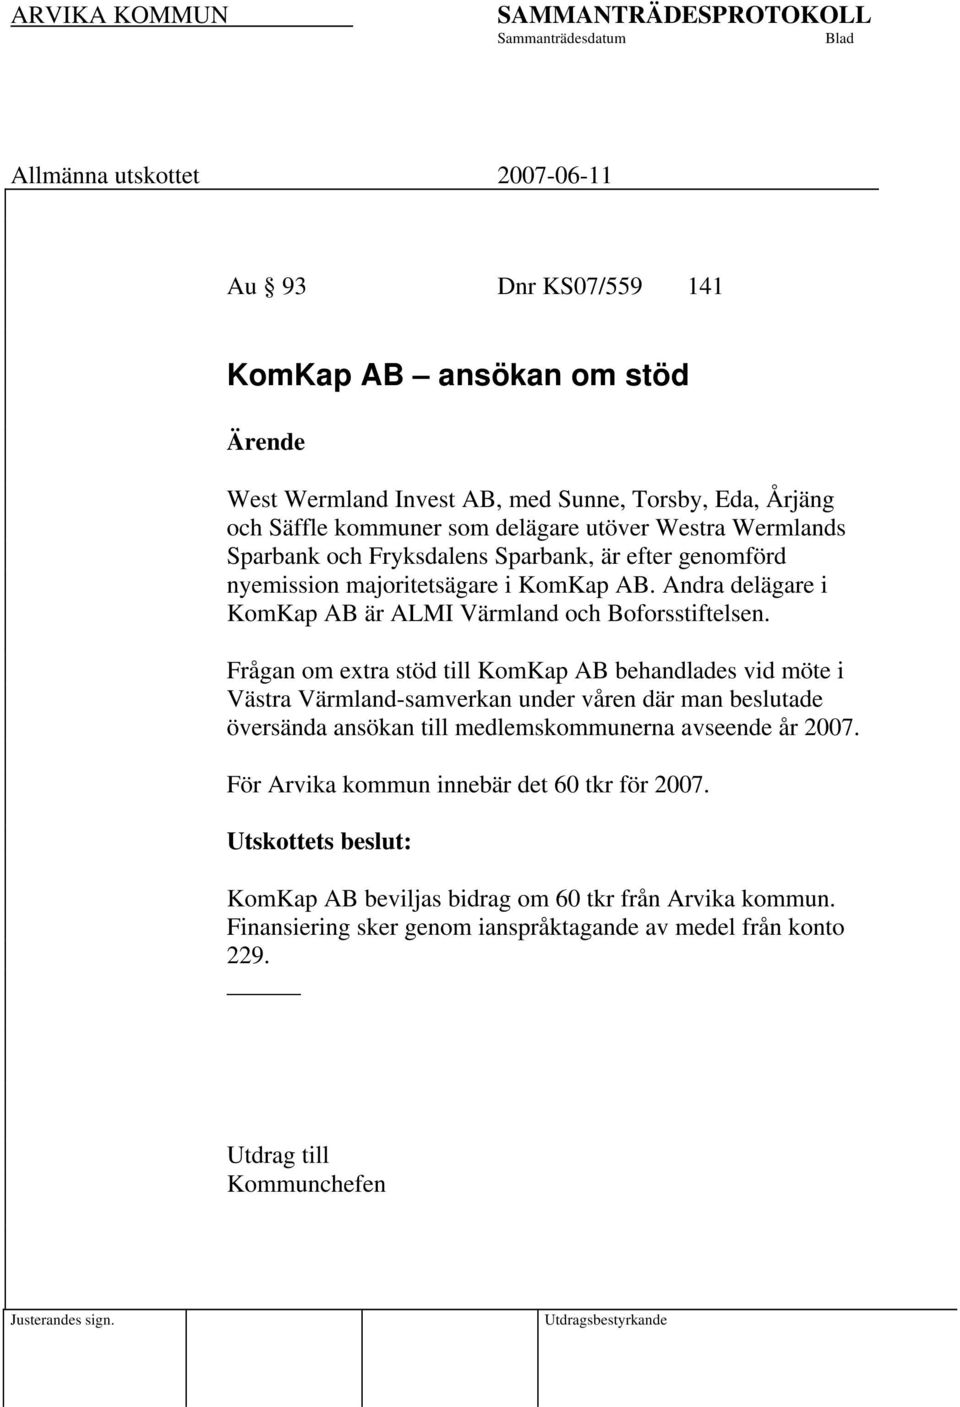 Frågan om extra stöd till KomKap AB behandlades vid möte i Västra Värmland-samverkan under våren där man beslutade översända ansökan till medlemskommunerna avseende år 2007.